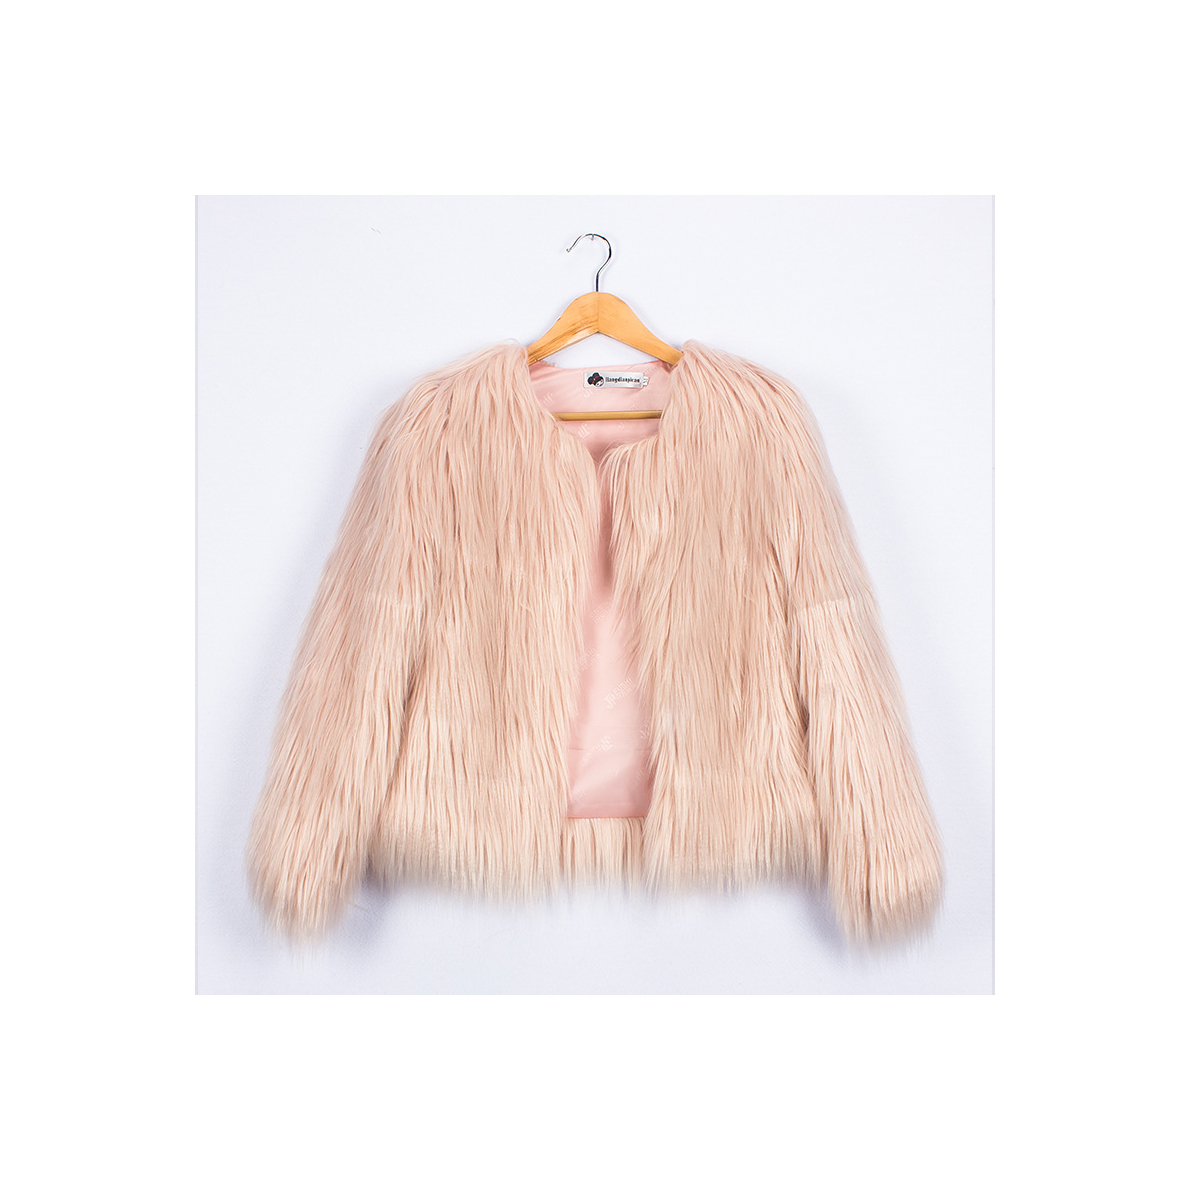 Plus Size 4XL Women Fluffy Faux Fur Coats Long Sleeve Winter Warm Jackets Female Outerwear light pink